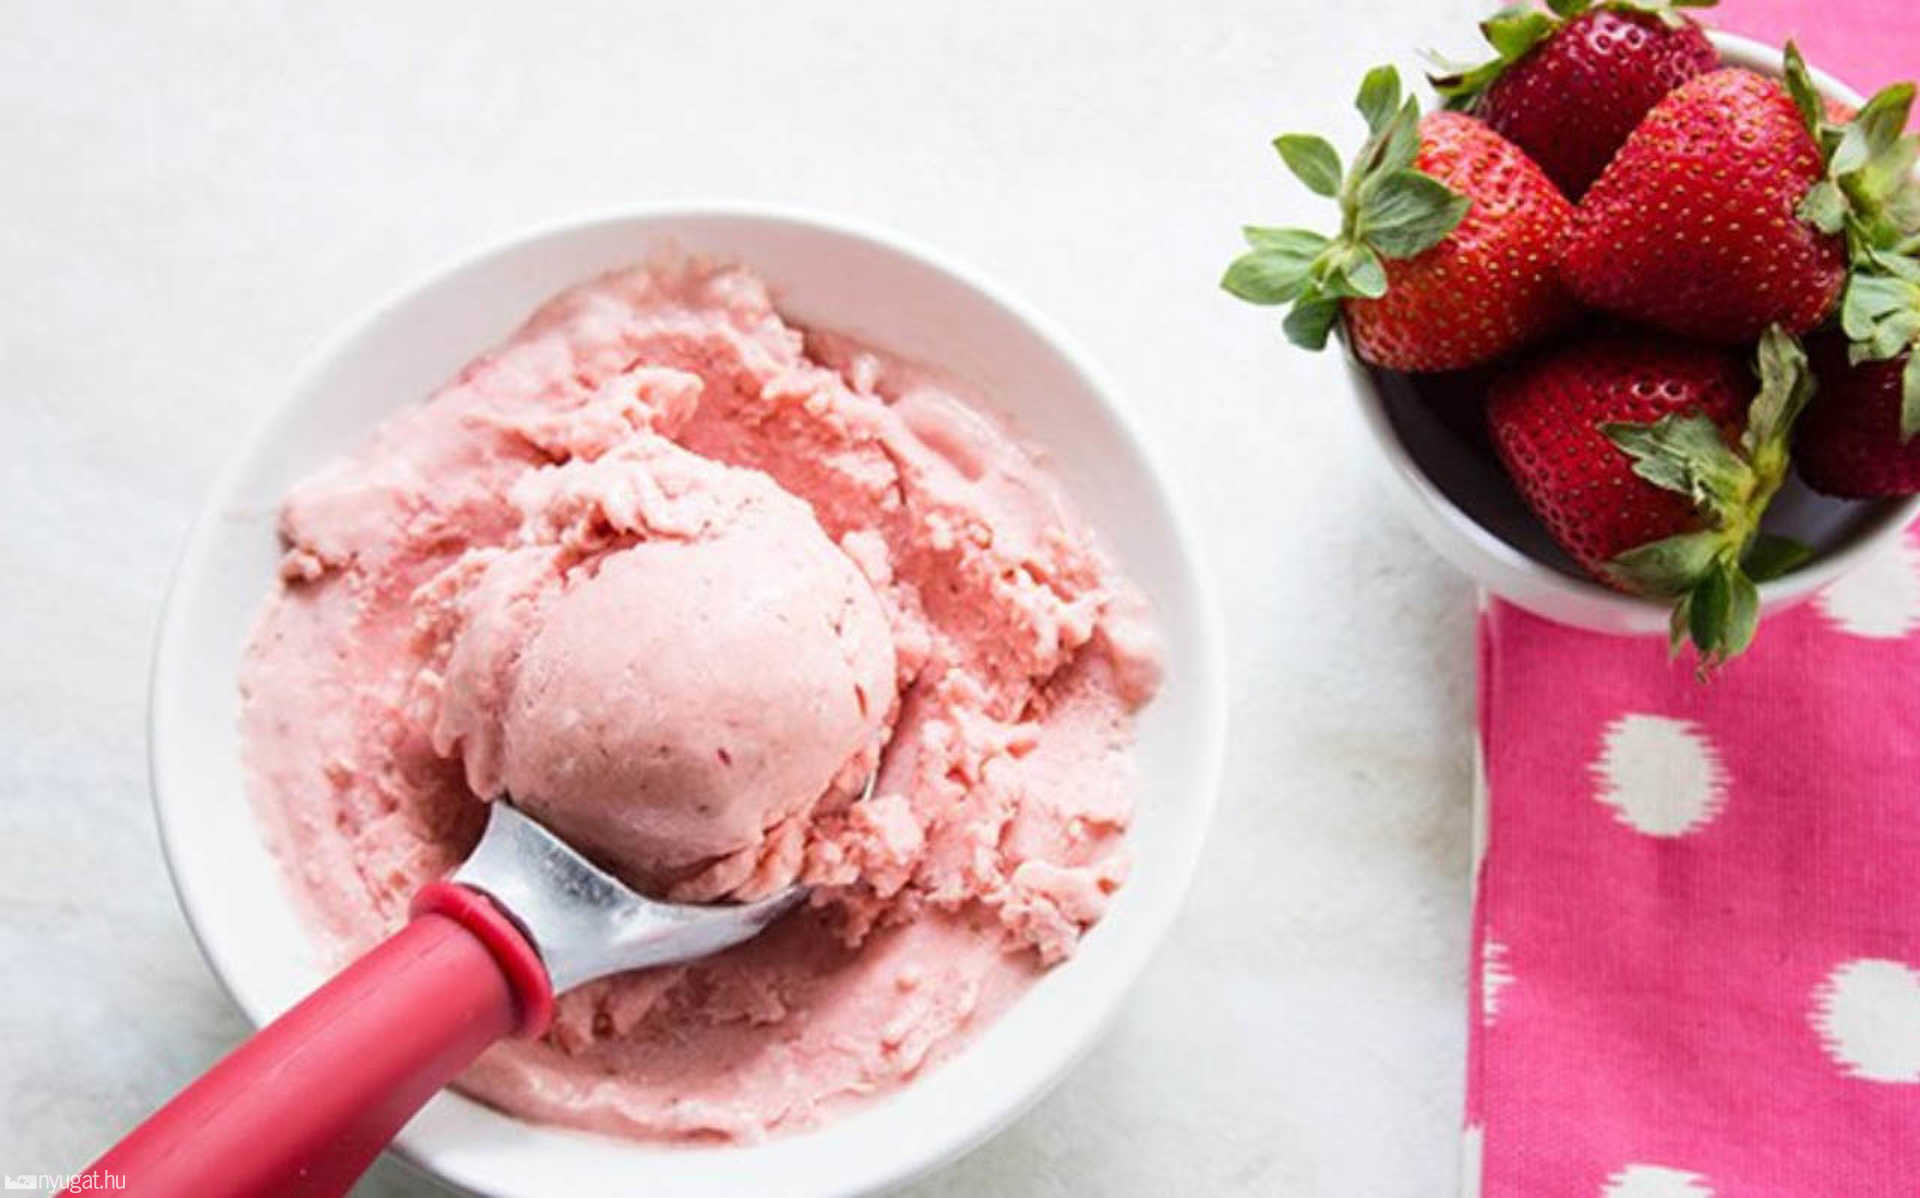 Кето мороженое: 8 рецептов от простого до необычного